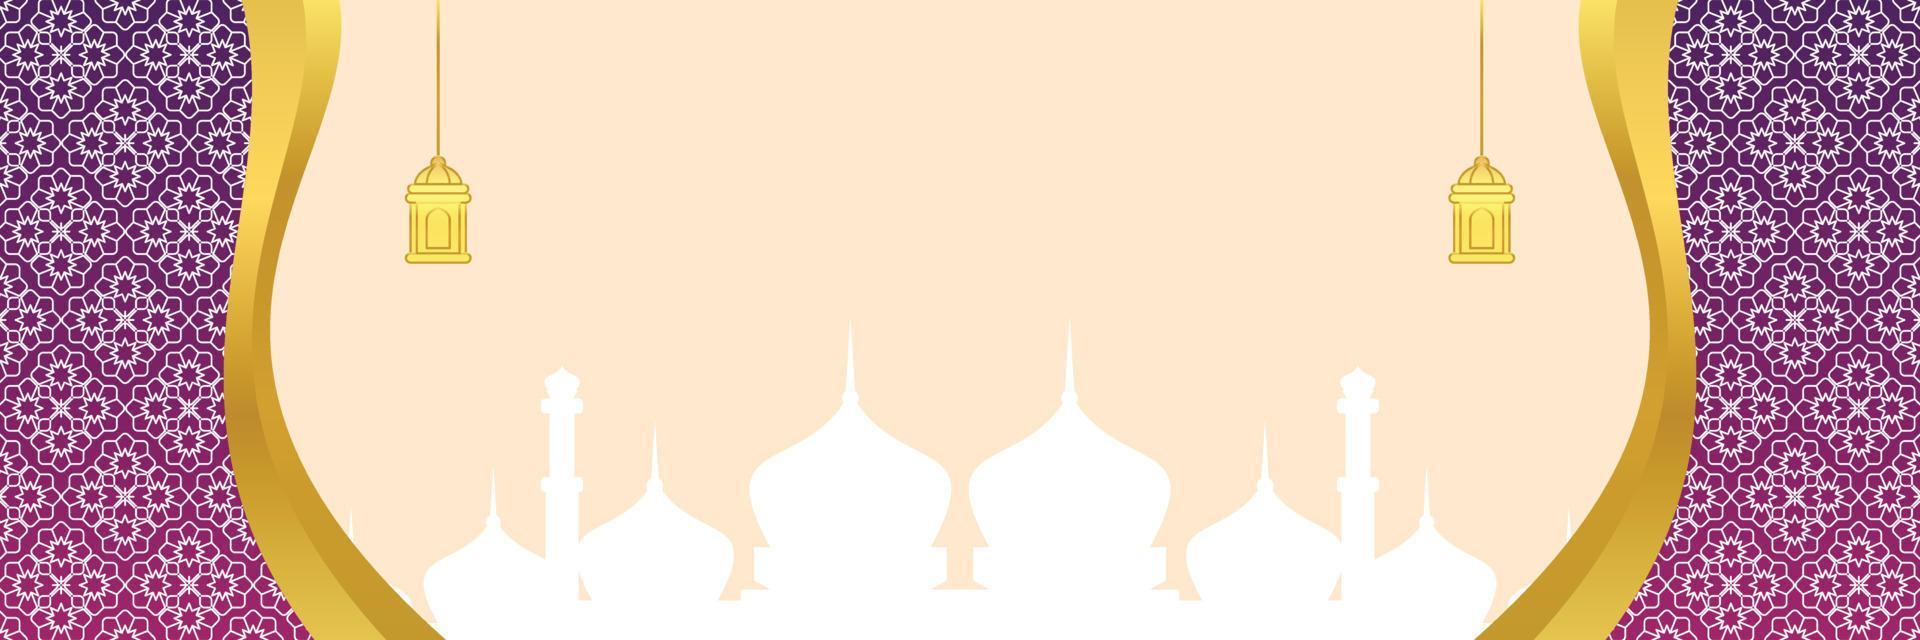 islamic bakgrund, med mandala prydnad, lykta och moské silhuett. vektor mall för banderoller, hälsning kort för islamic högtider, eid al fitr, ramadhan, eid al Adha